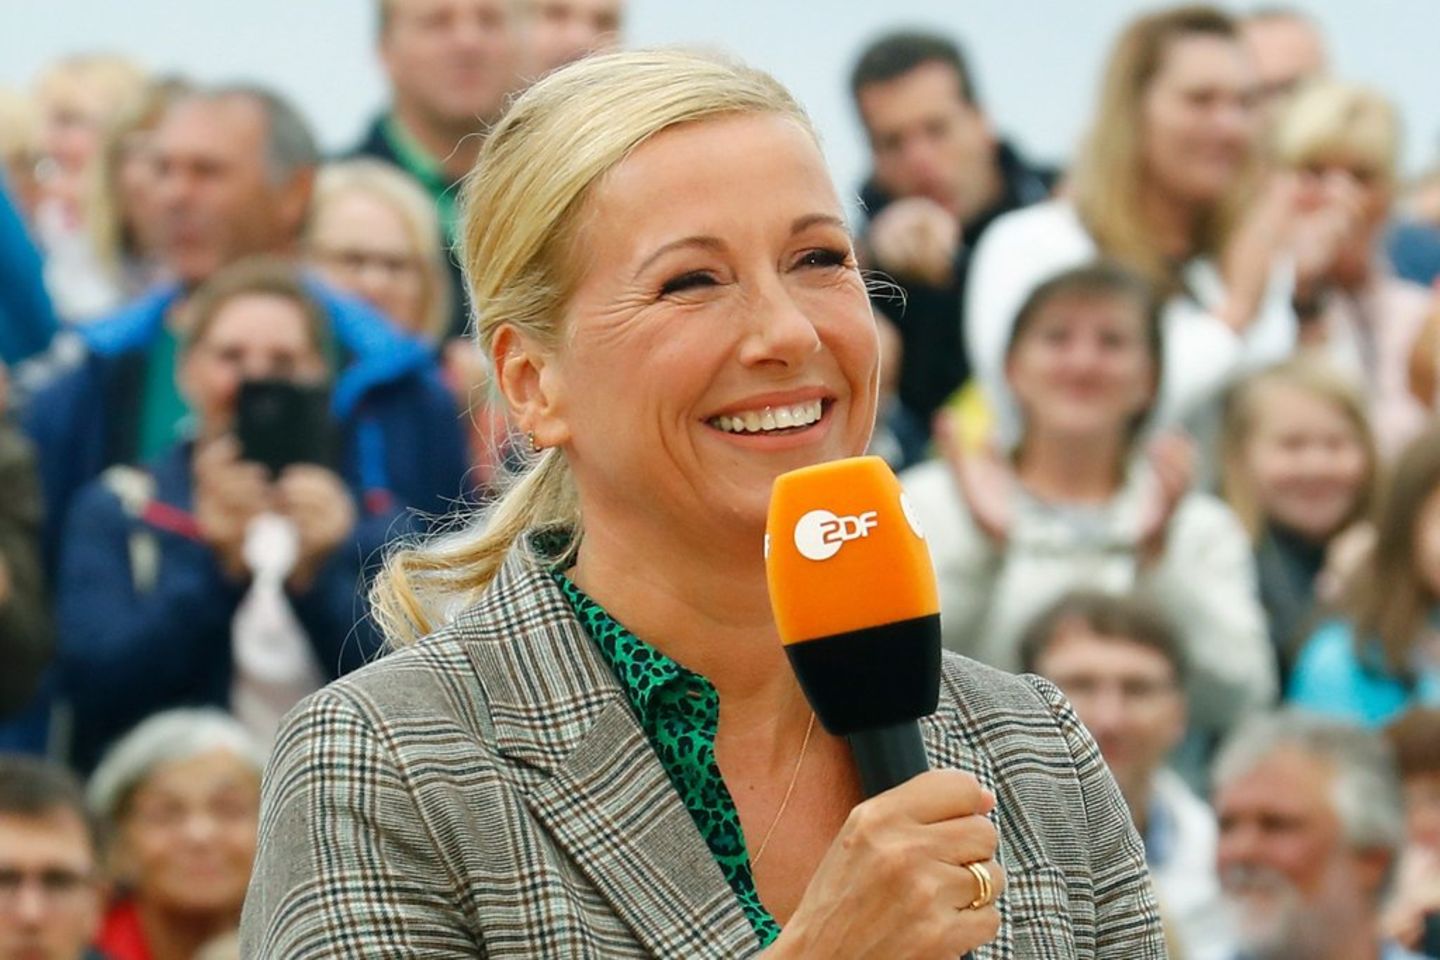 Andrea Kiewel moderierte erneut den "ZDF-Fernsehgarten".